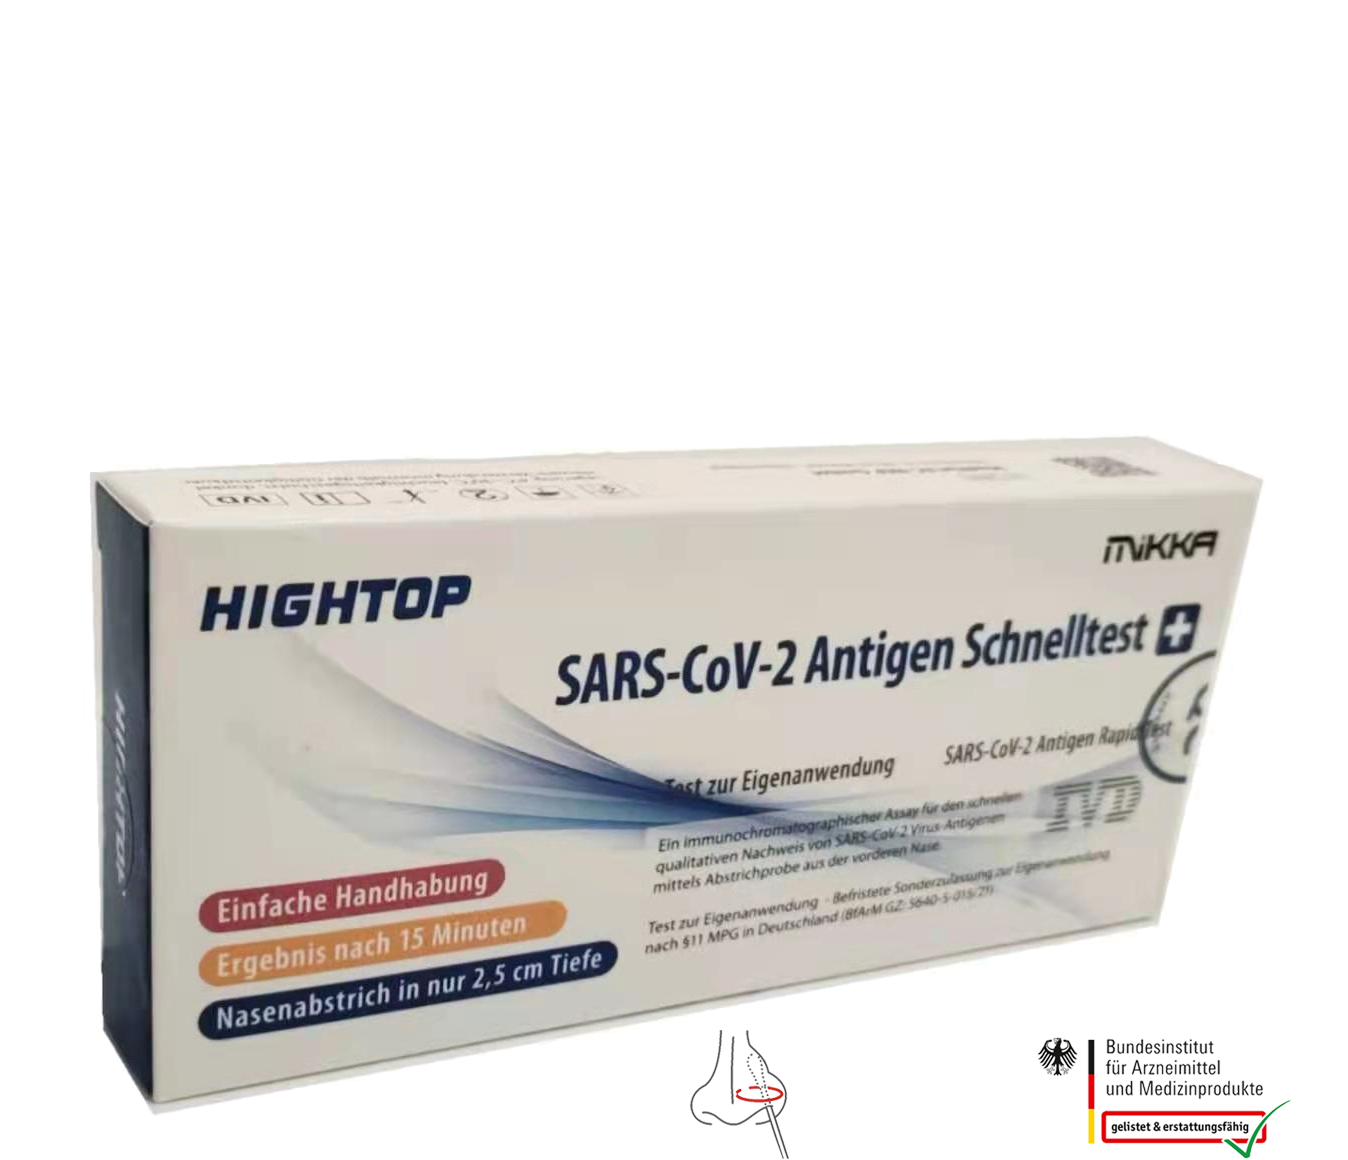    LAIEN HIGHTOP®  Antigen schnelltests,100 Tests(Einzelverpackung)